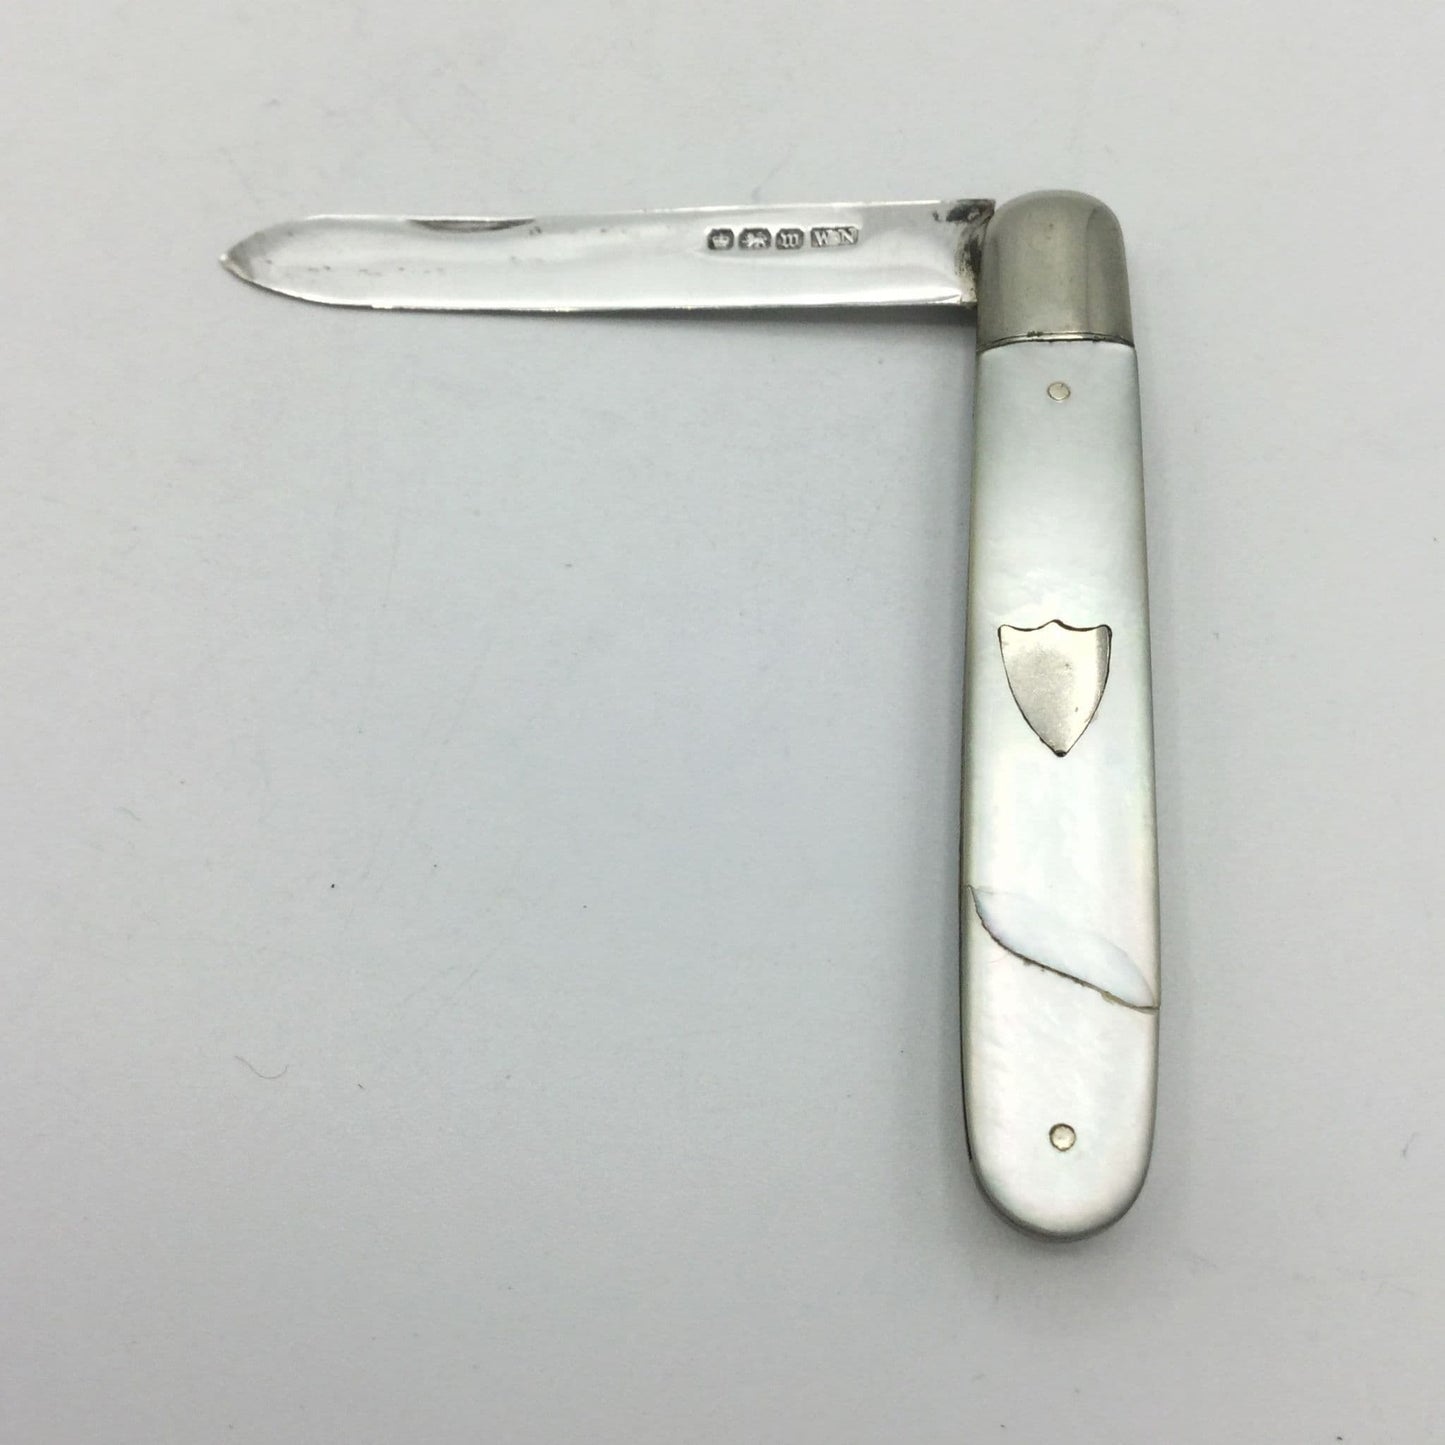 Antique Sterling Silver Fruit Knife, 1914 Hallmark